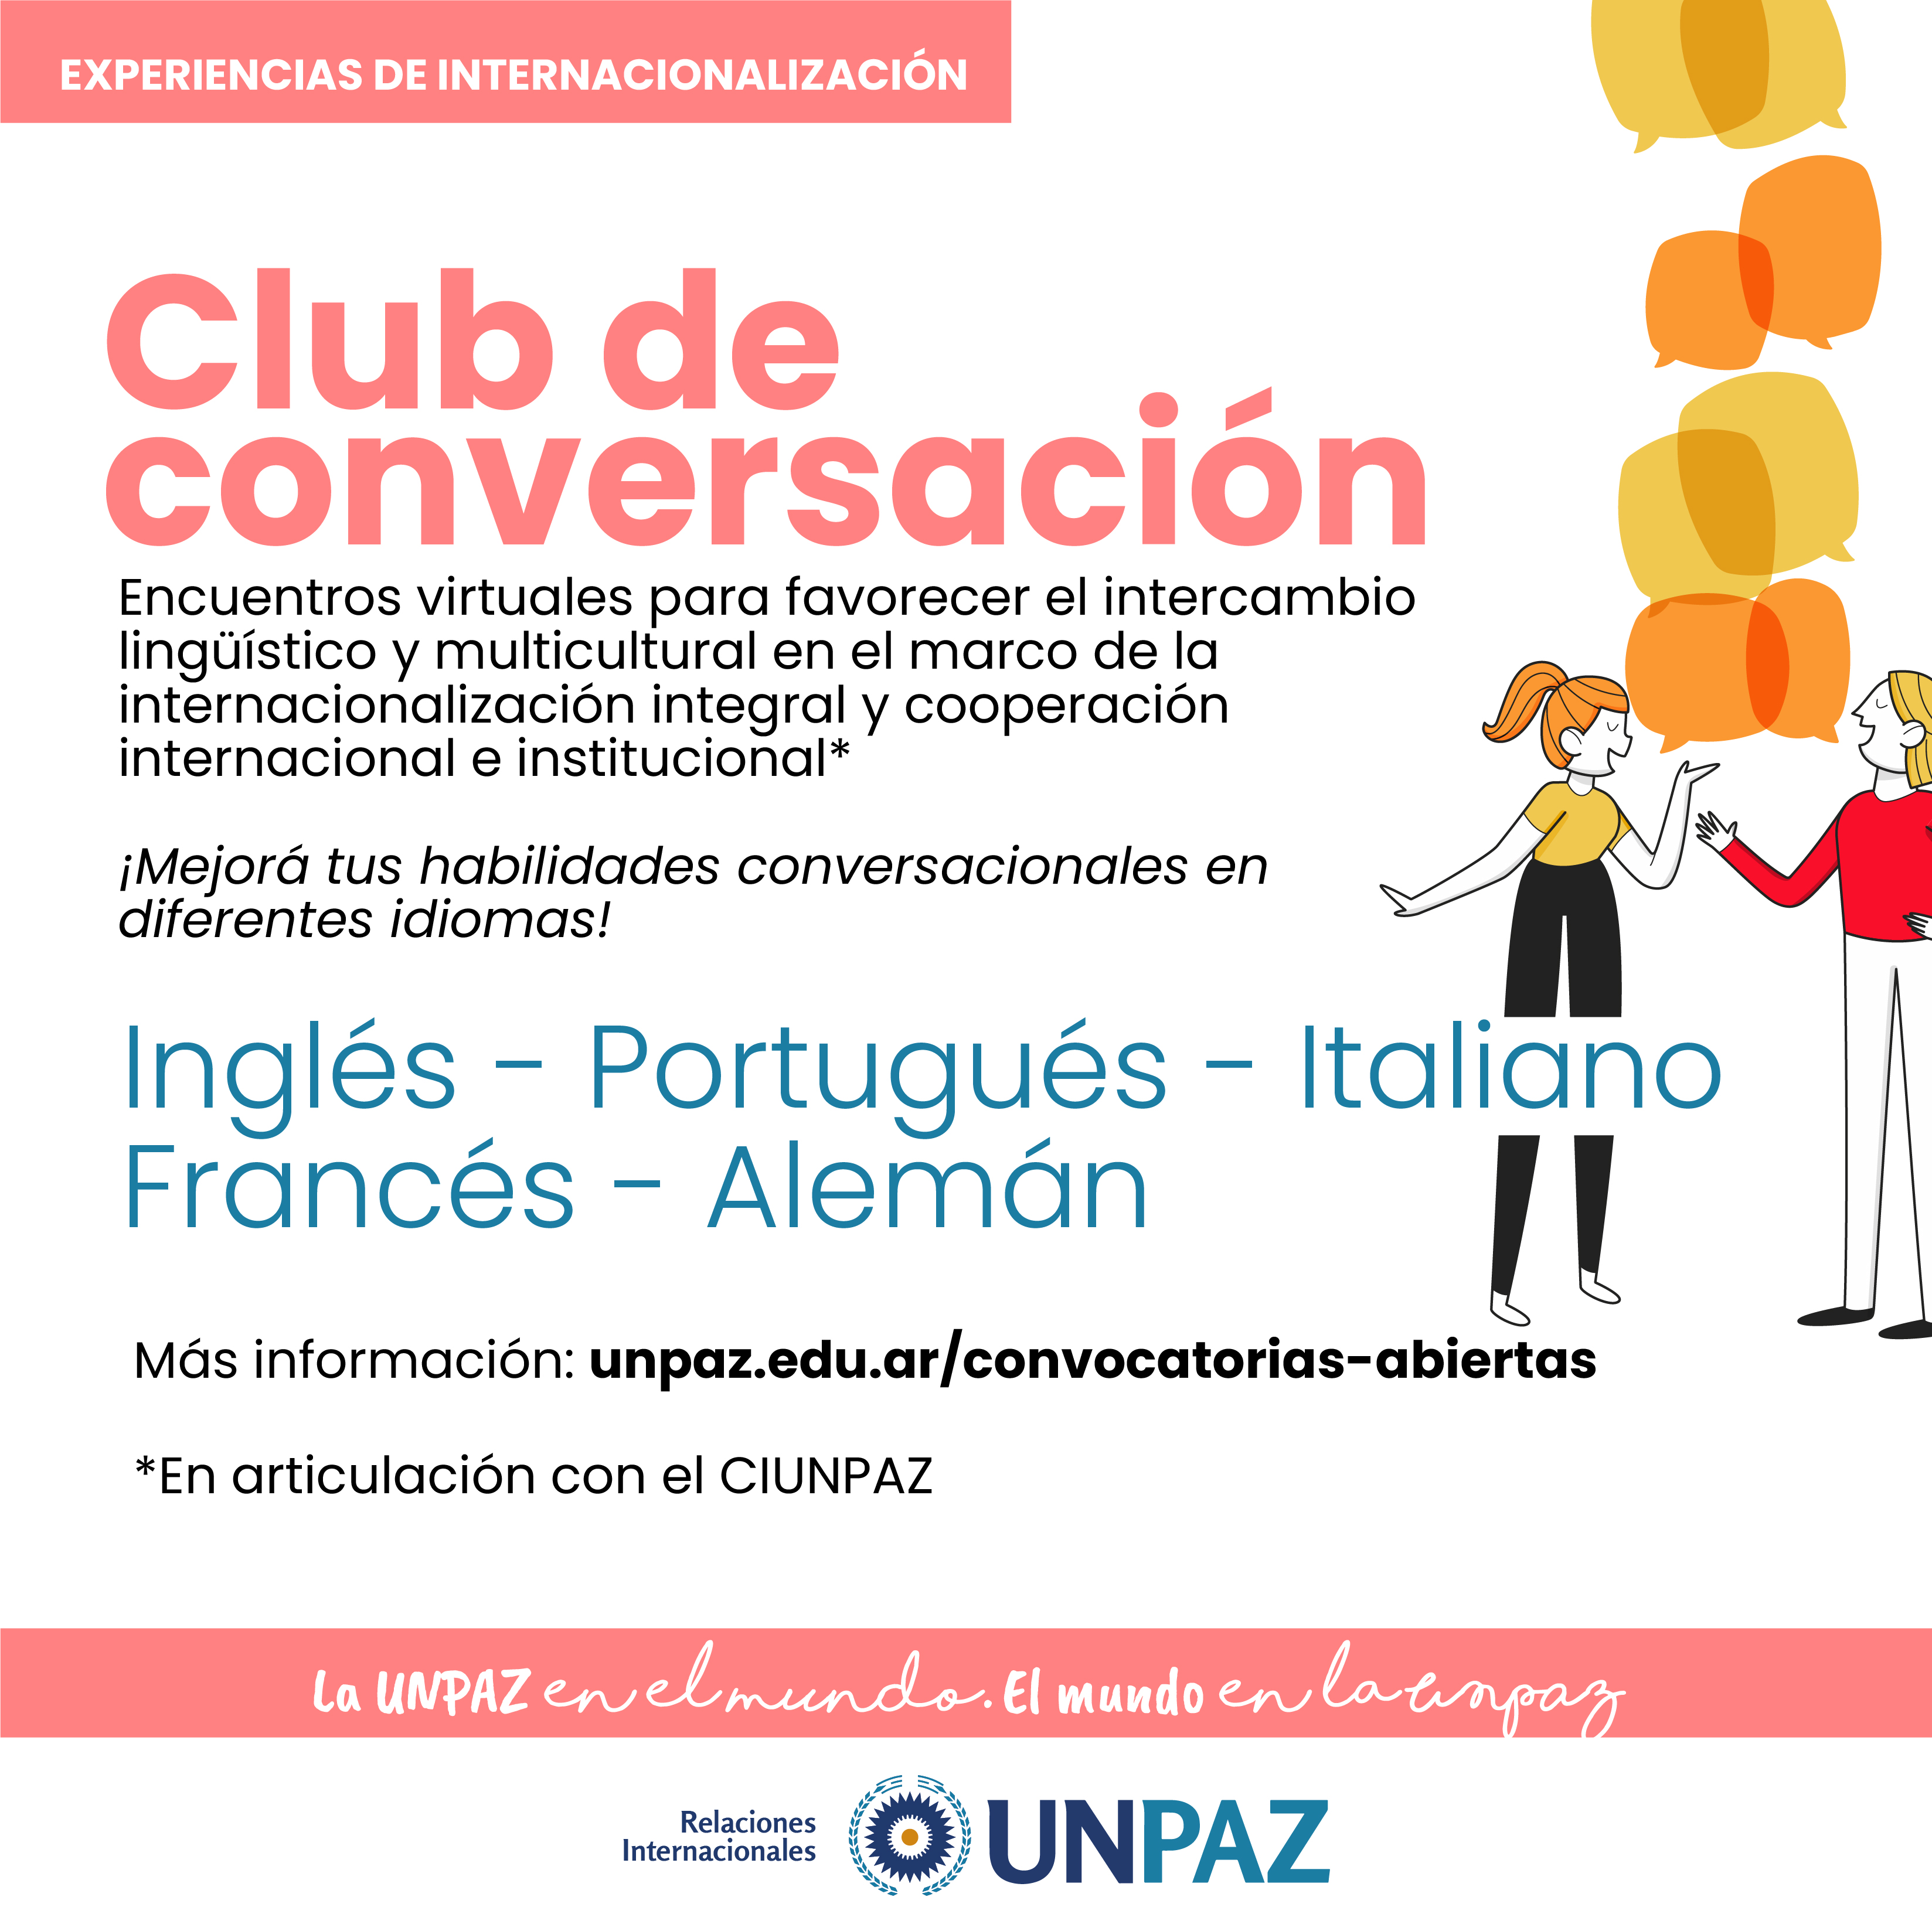 CLUB DE CONVERSACIÓN - UNPAZ